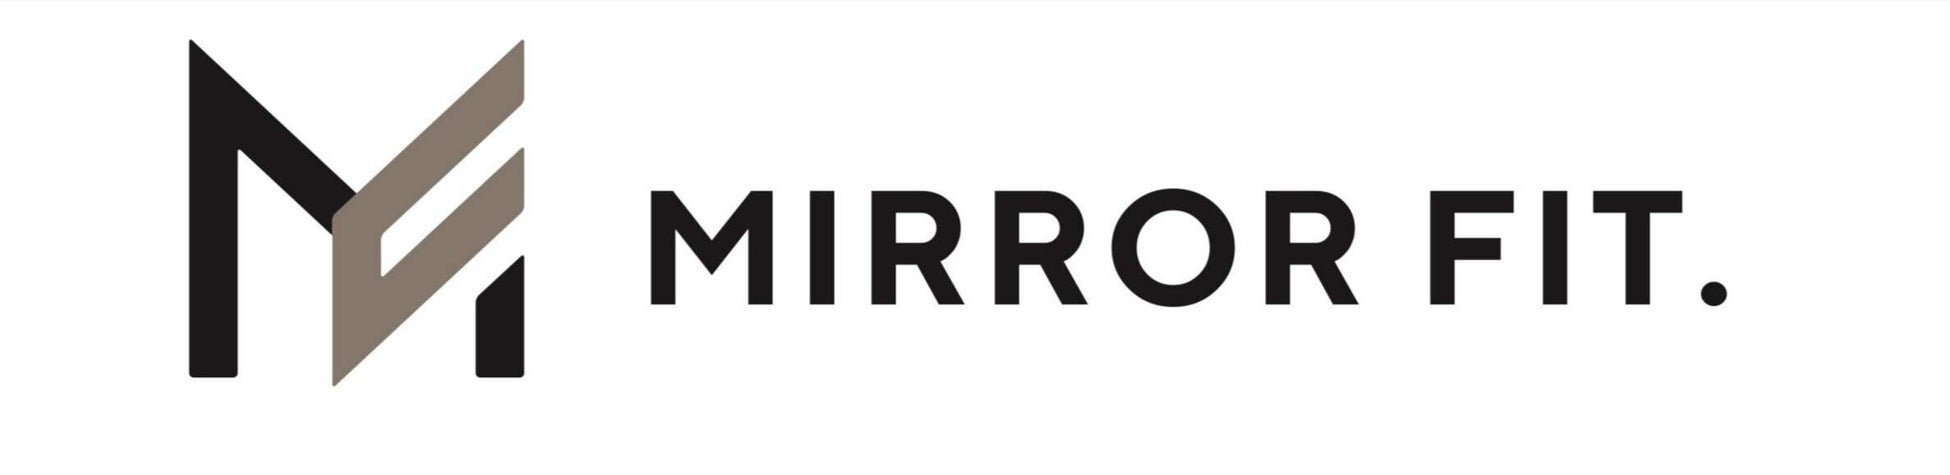 【不動産業界との新しい取り組み・第1弾】次世代型スマートミラー「MIRROR FIT.」が、スマートホームサービス「SpaceCore」と連携し、215戸をスマートホーム化のサブ画像11